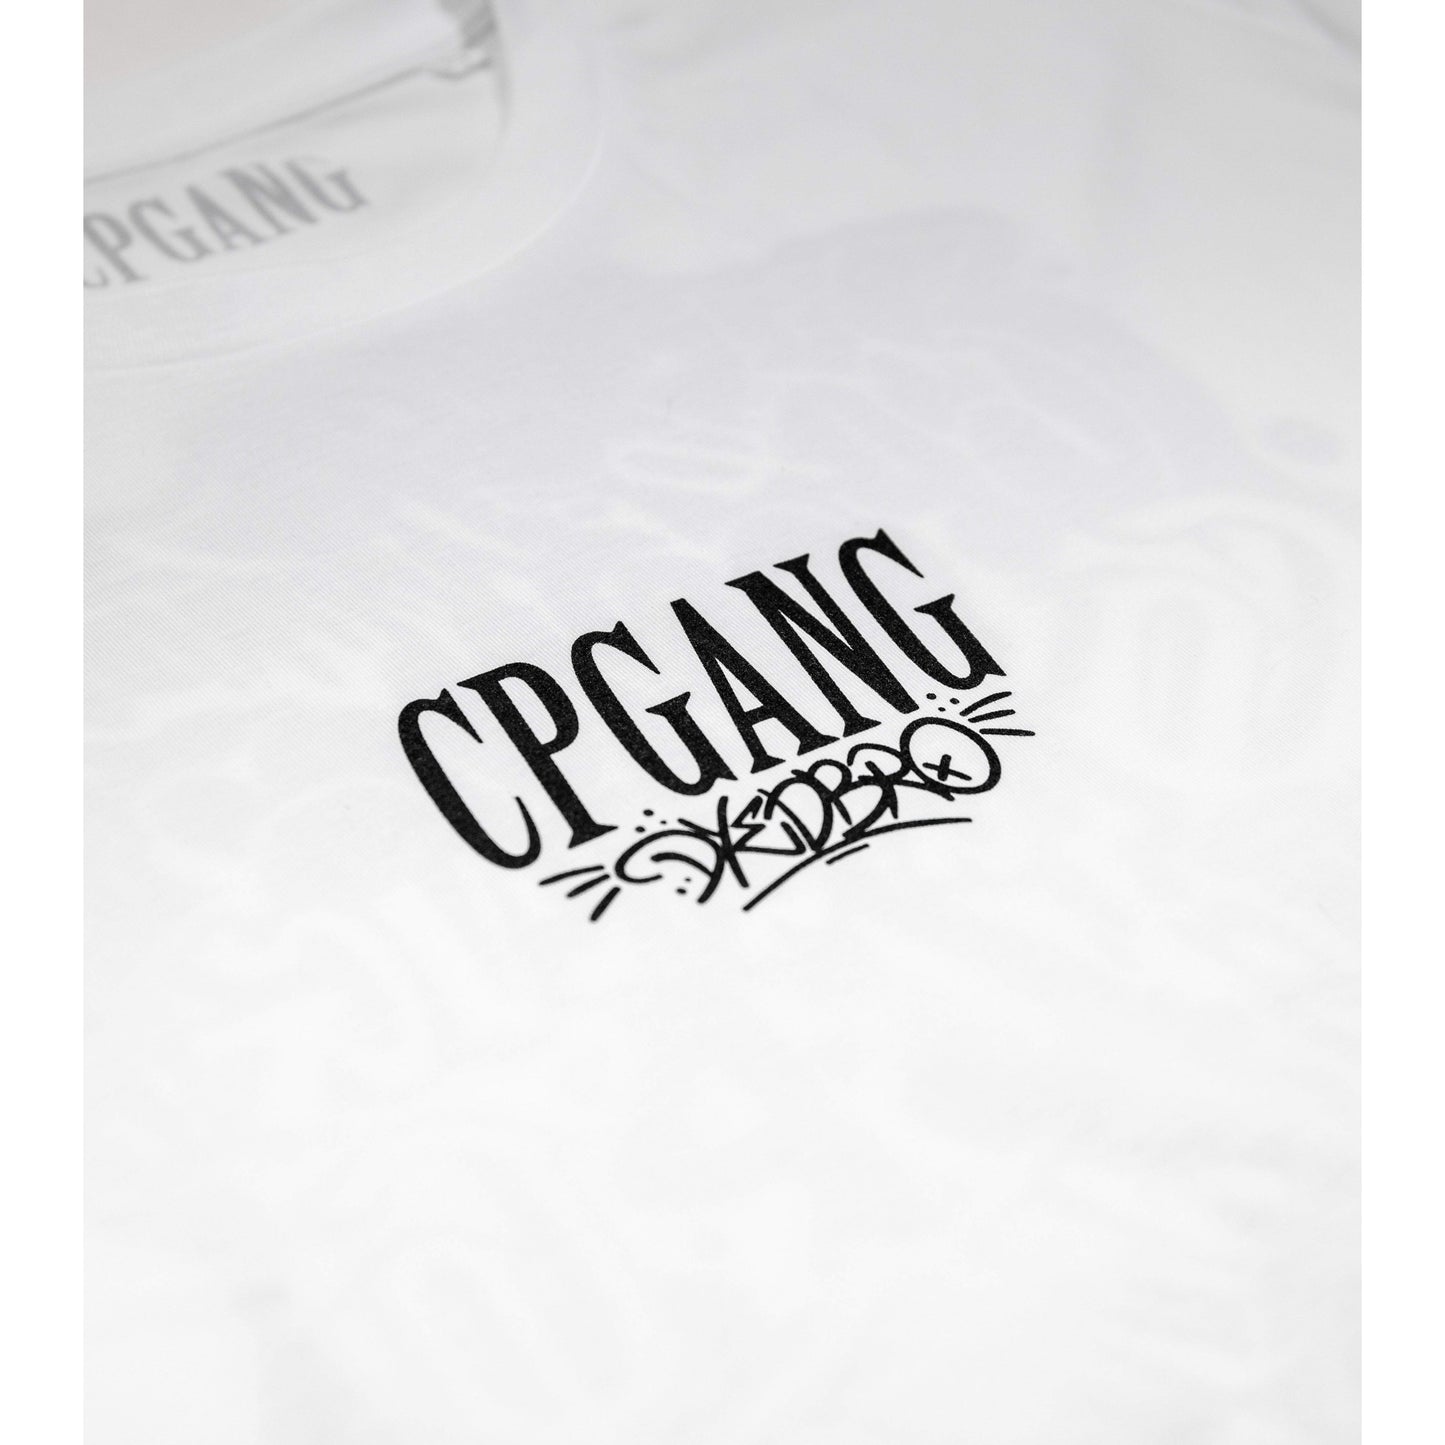 CPGANG® + DYEDBRO® T shirt